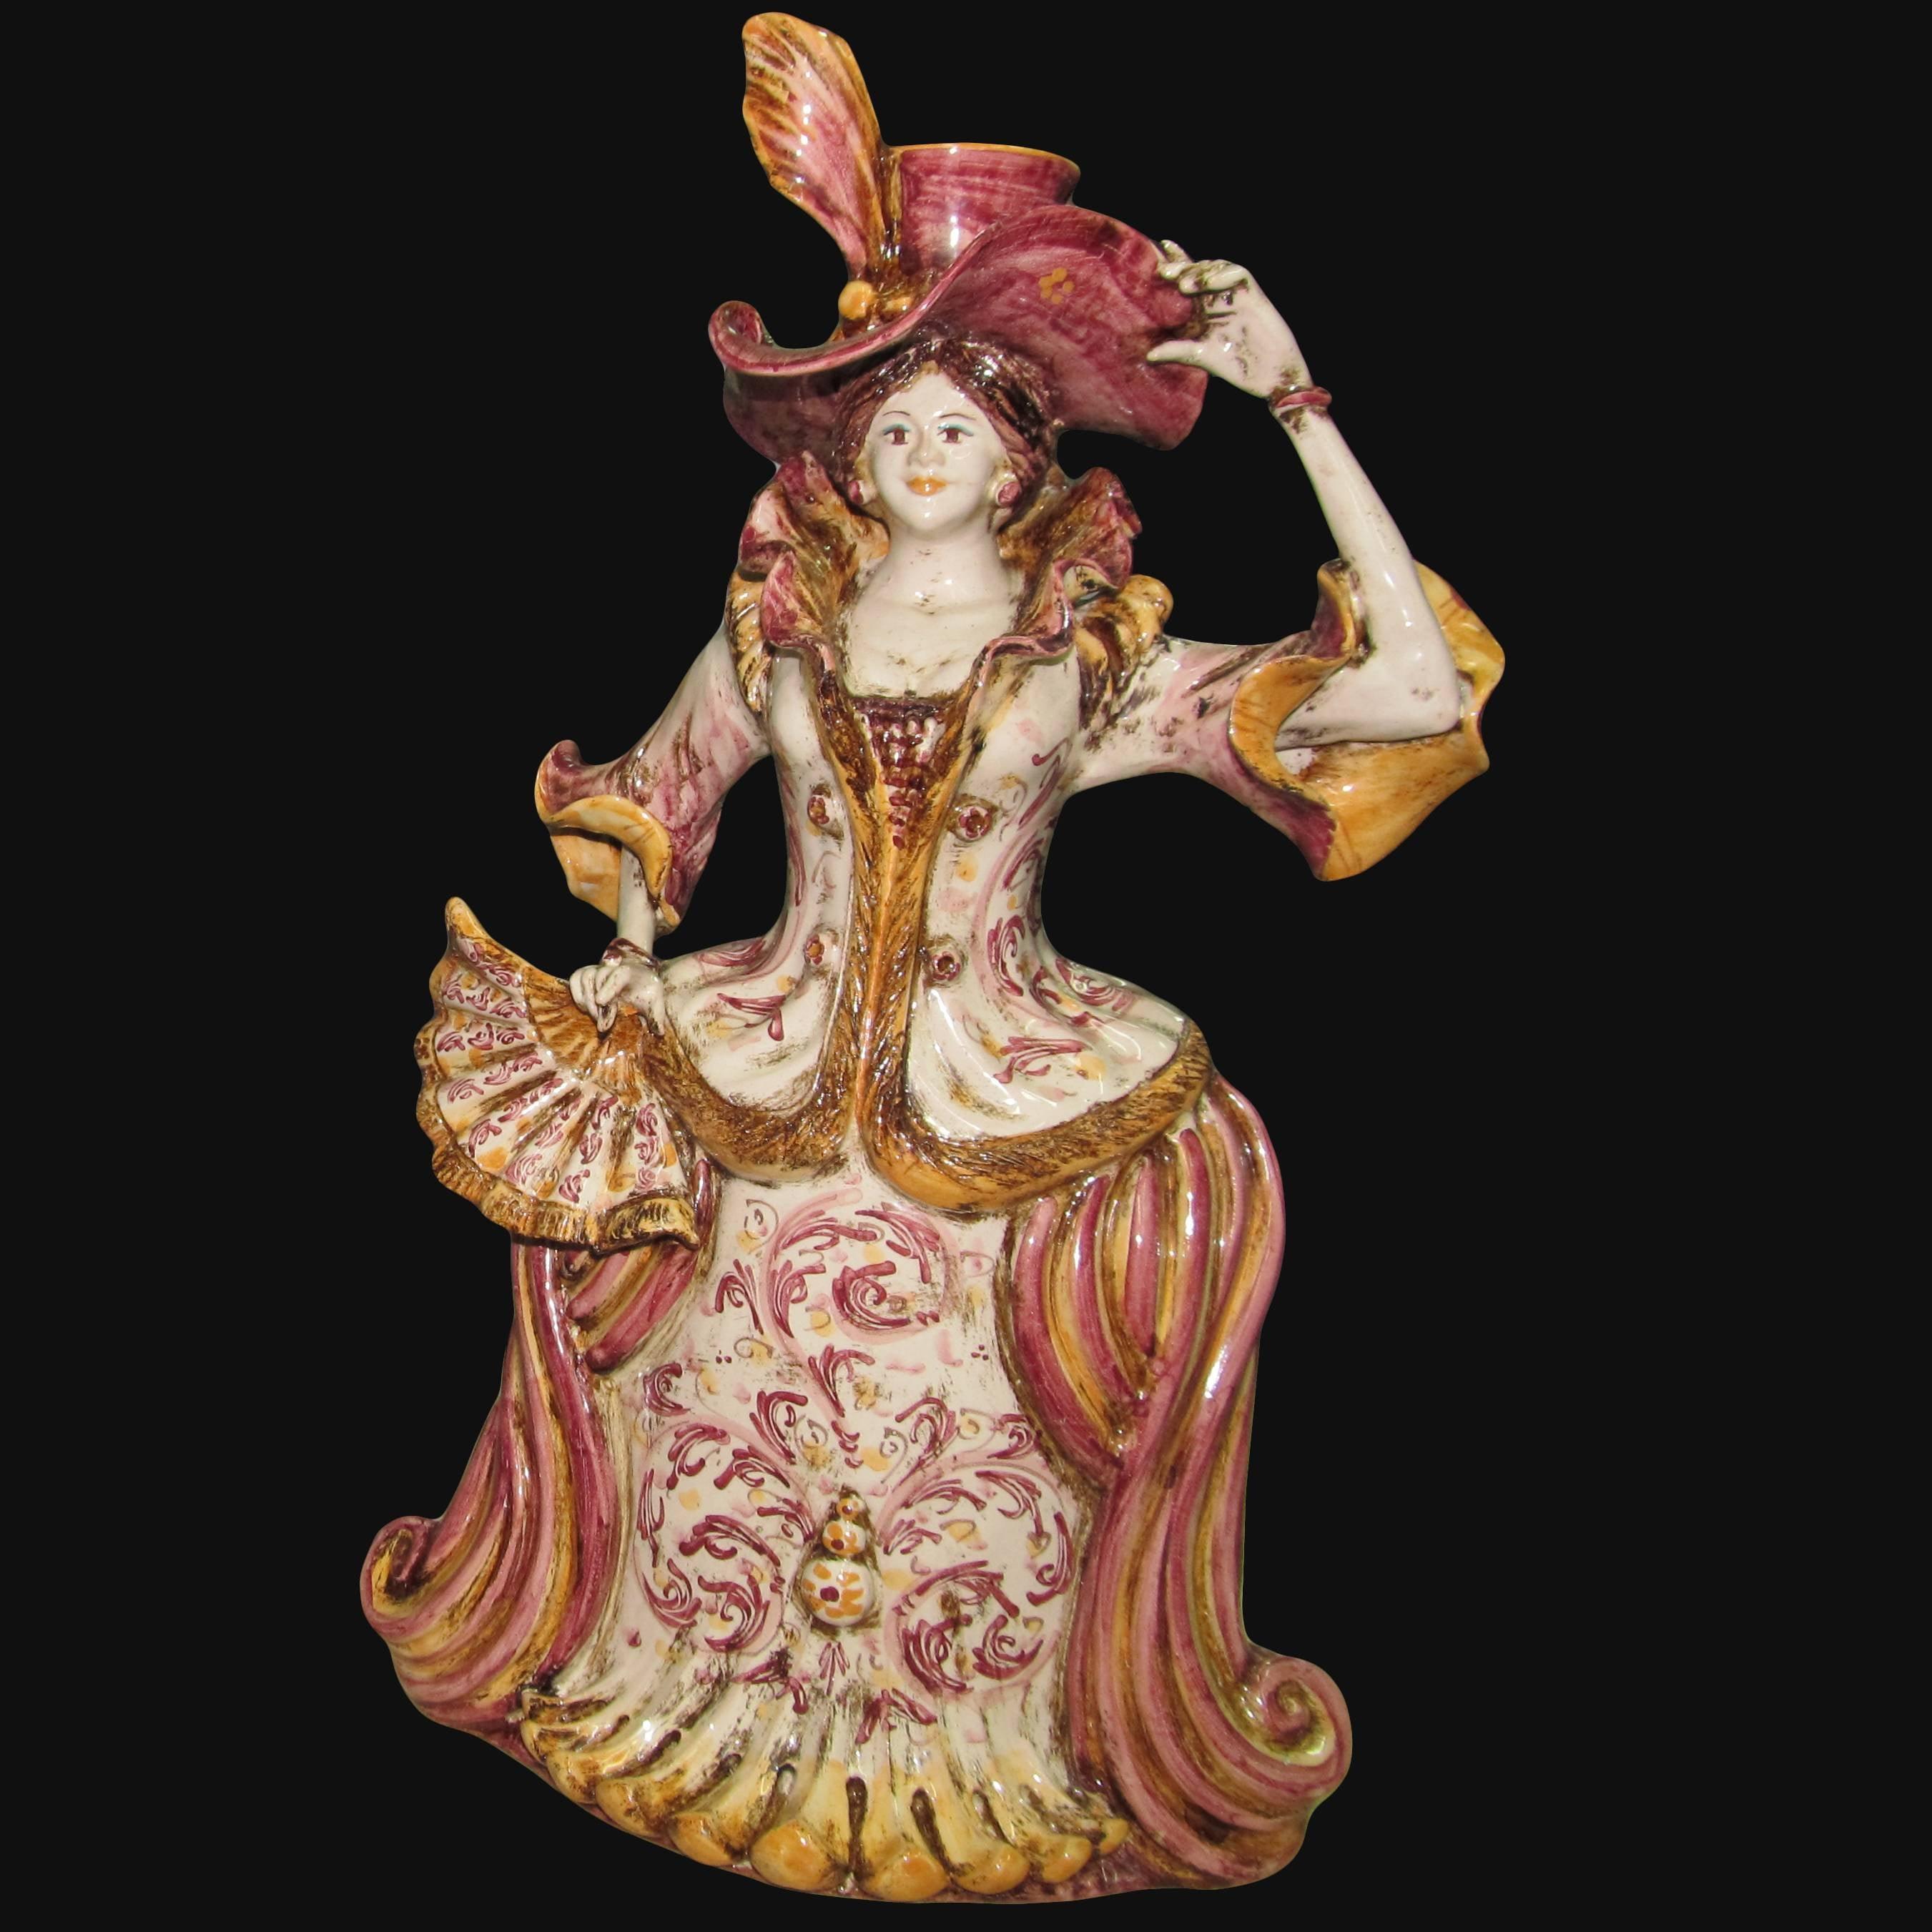 Lumiera grande femmina h 40 in bordeaux/arancio - Modellate a mano - Ceramiche di Caltagirone Sofia